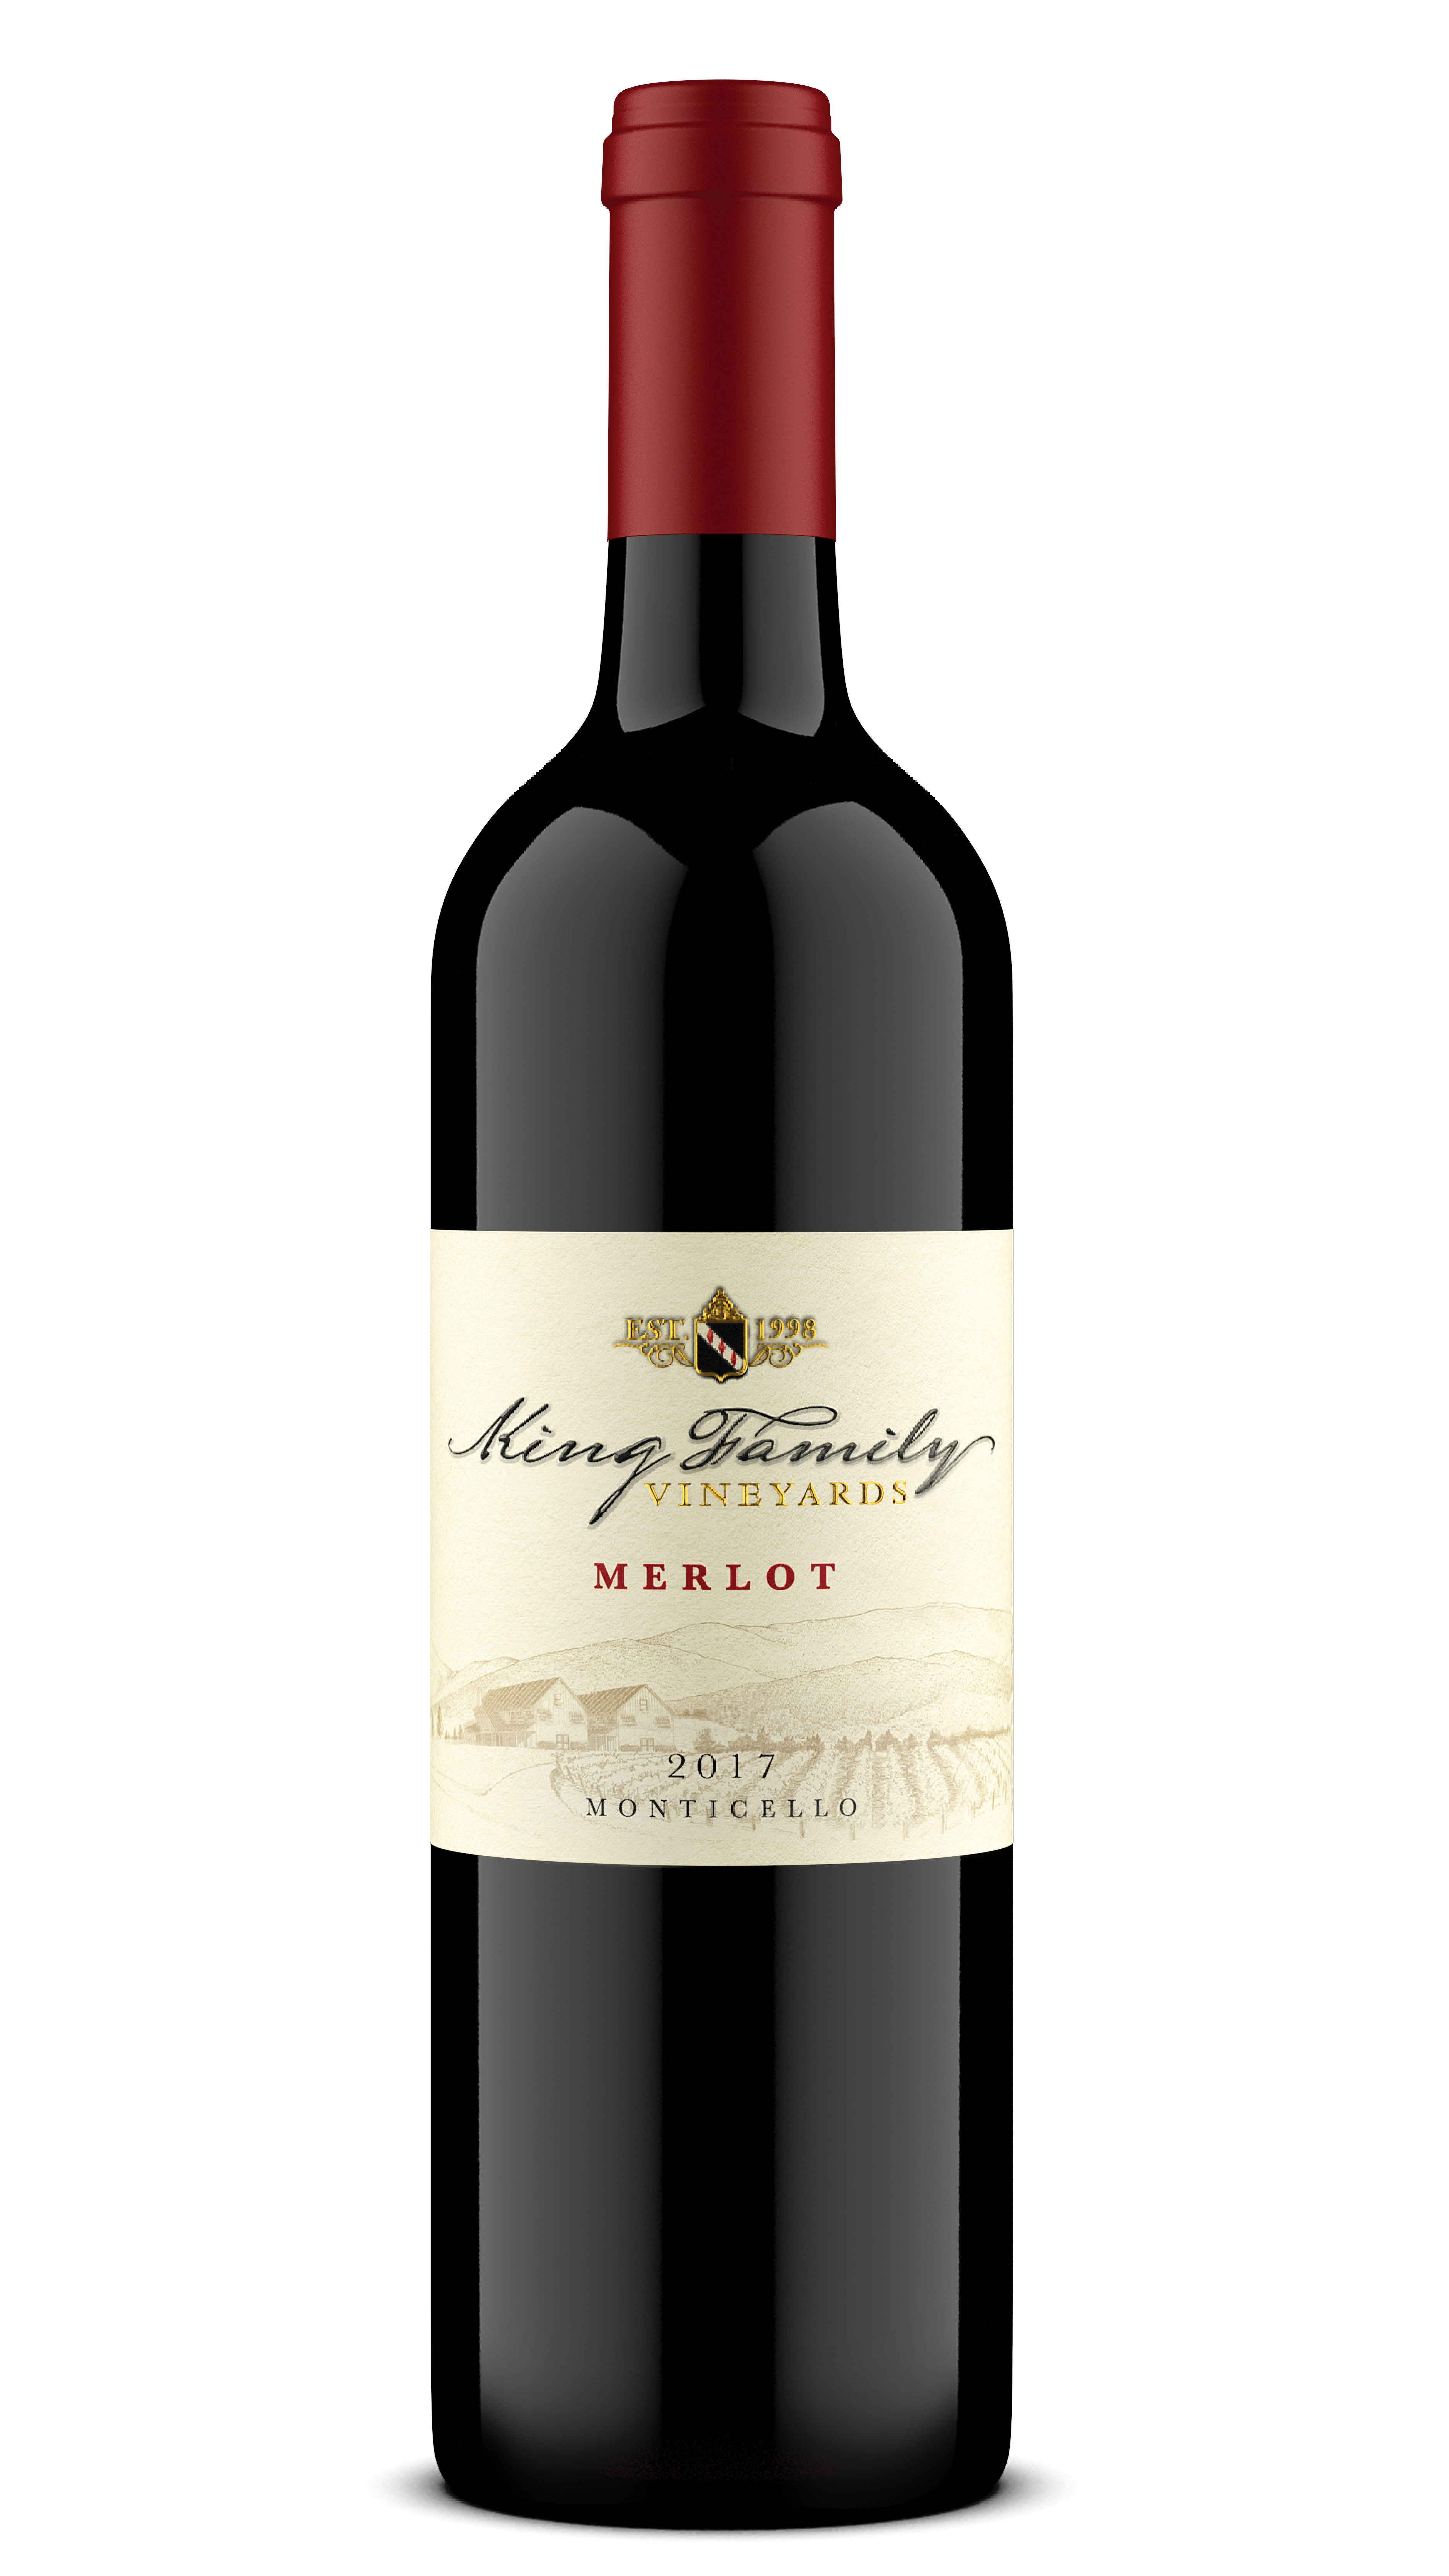 Bottle of King Family Vineyards 2017 Merlot